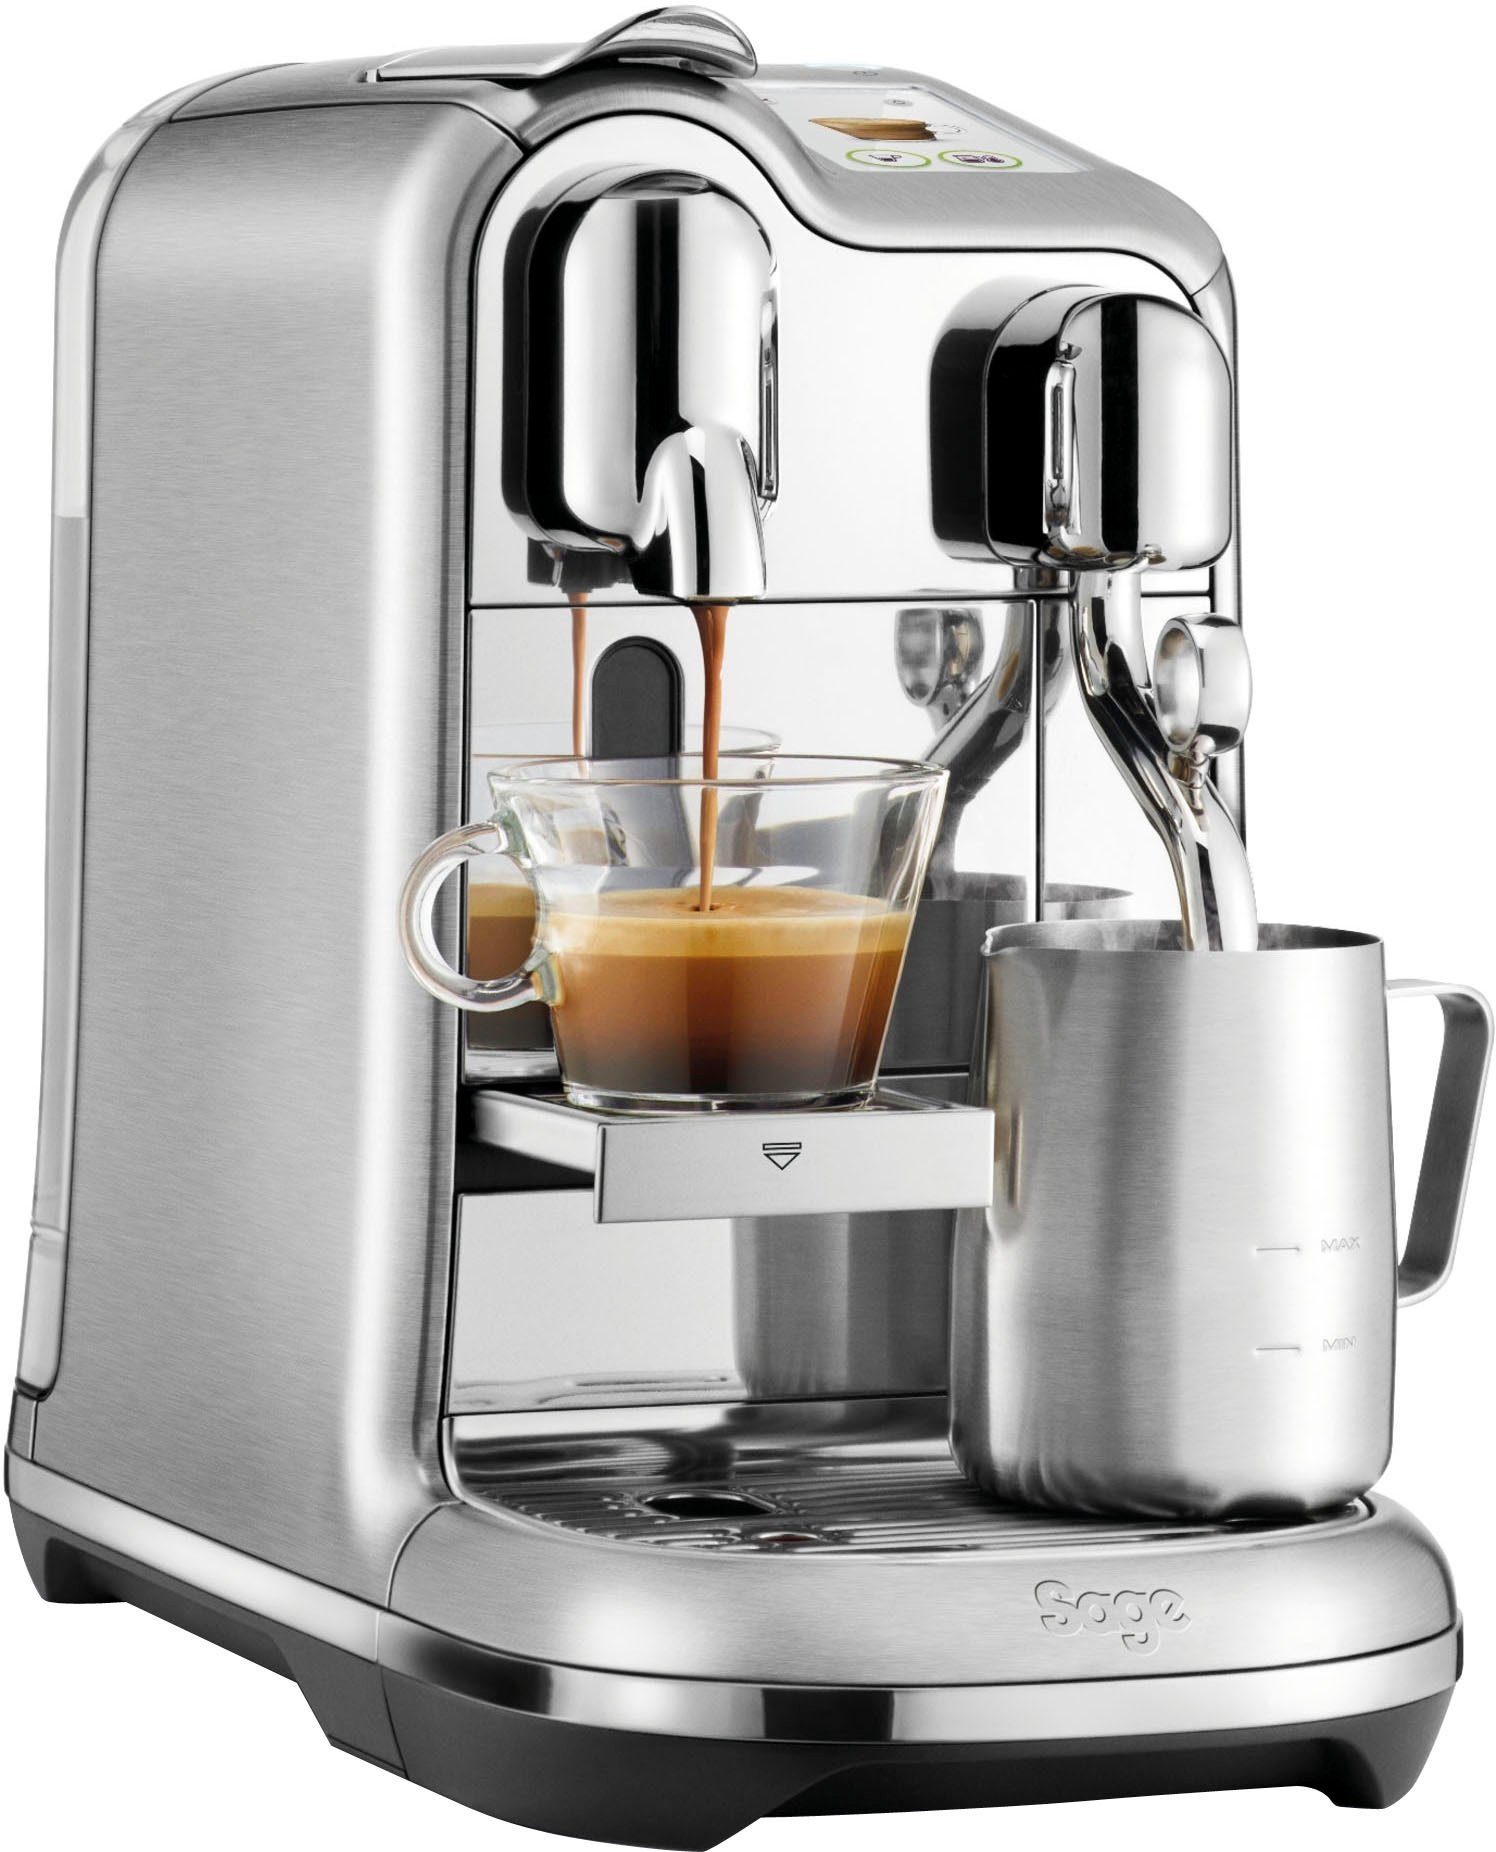 Nespresso Kapselmaschine Creatista Pro SNE900 von Sage, Gebürstetes  Edelstahl, inkl. Willkommenspaket mit 14 Kapseln, inkl. Edelstahl-Milchkanne  online kaufen | OTTO